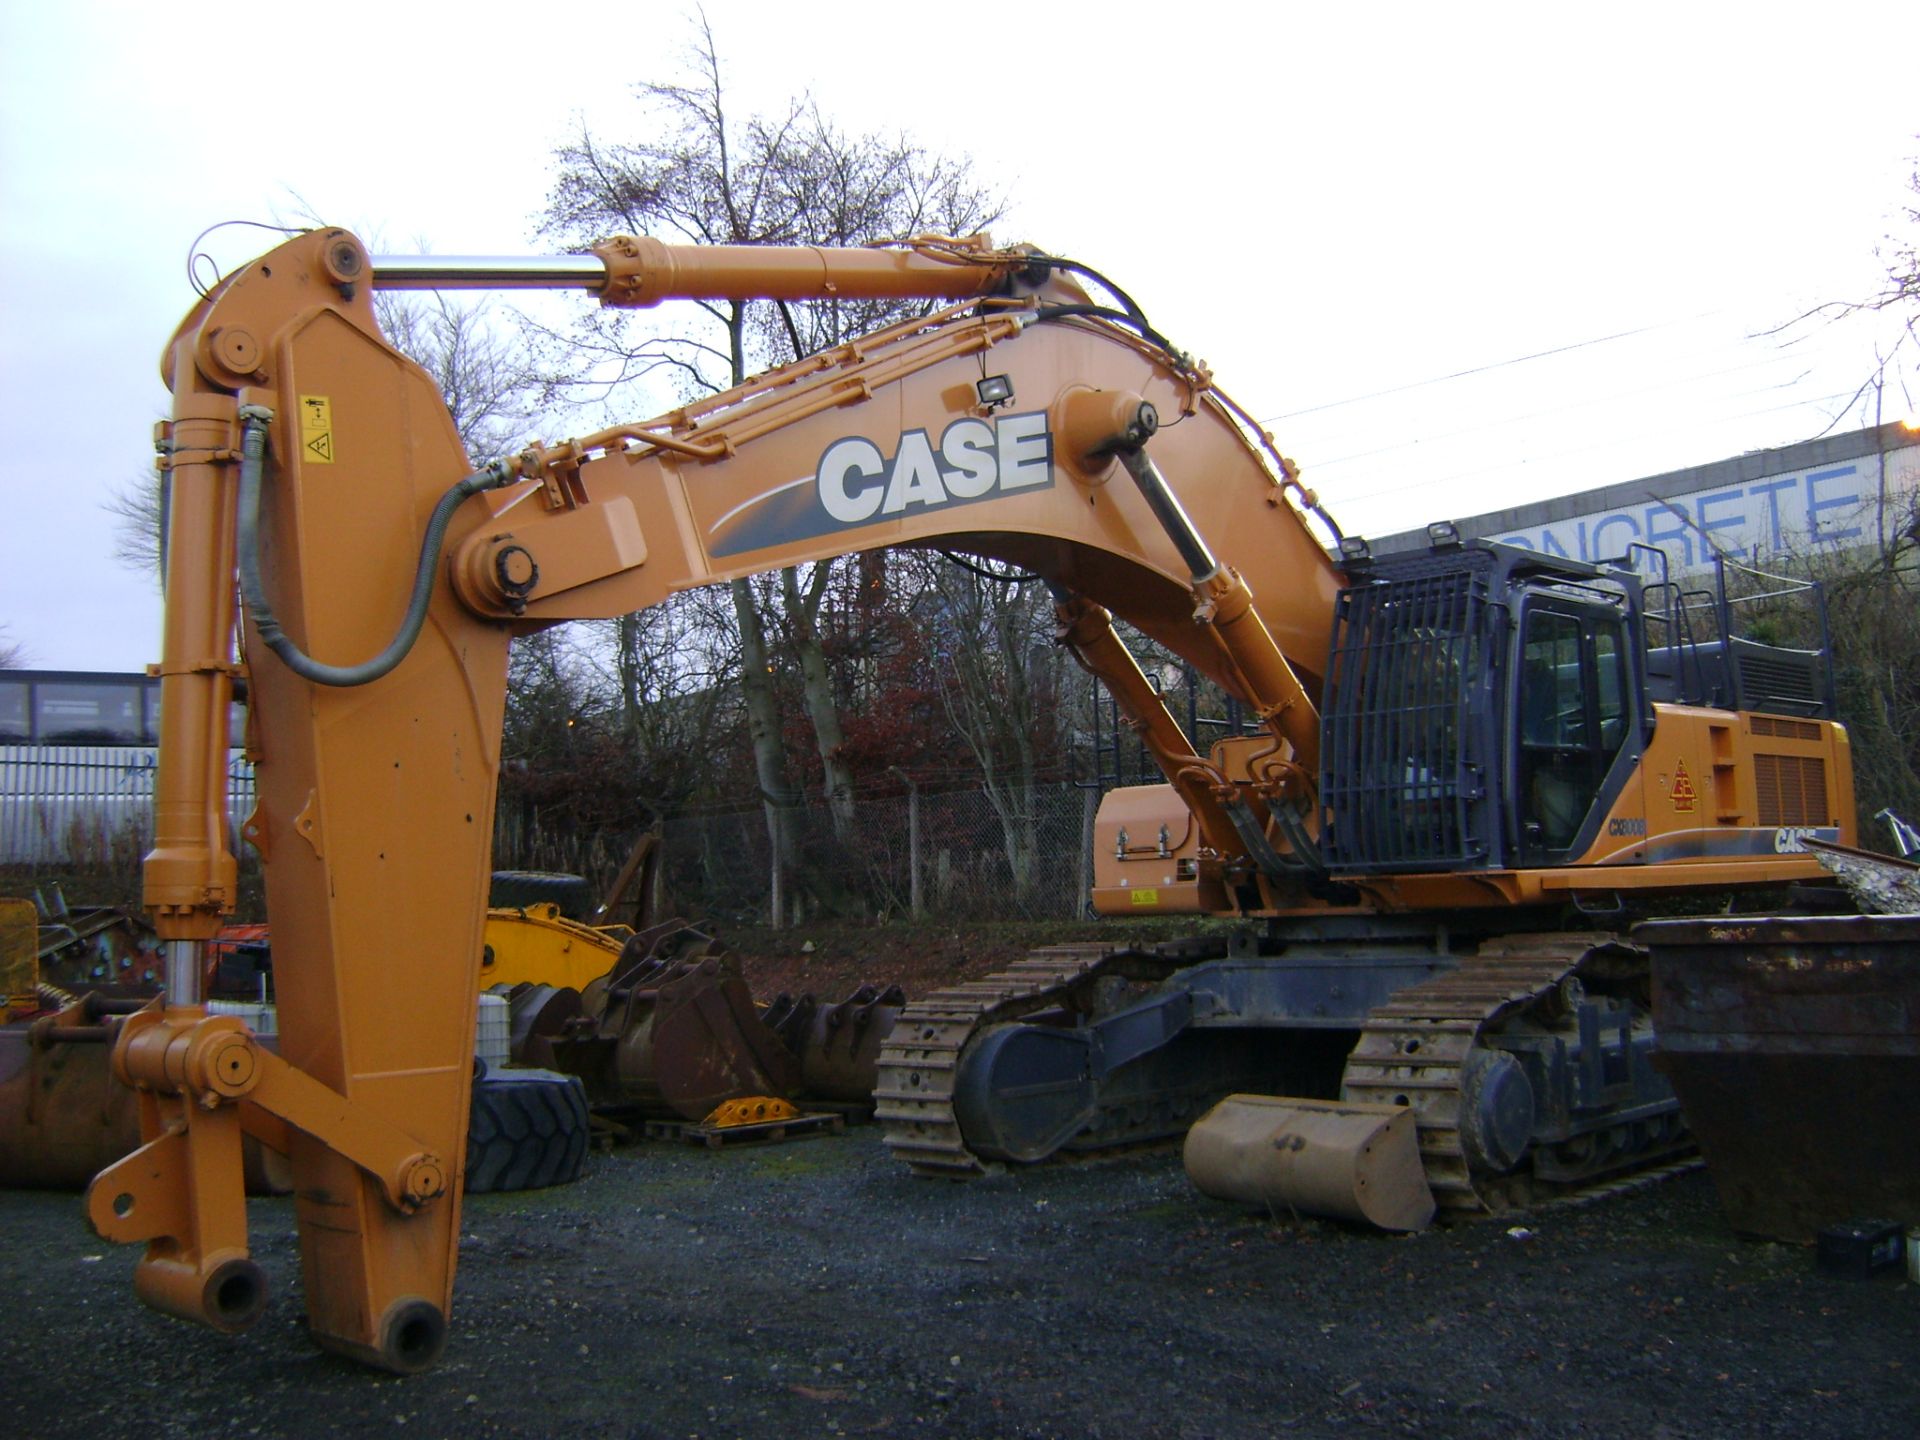 Case CX800 Tracked 80 Ton Excavator